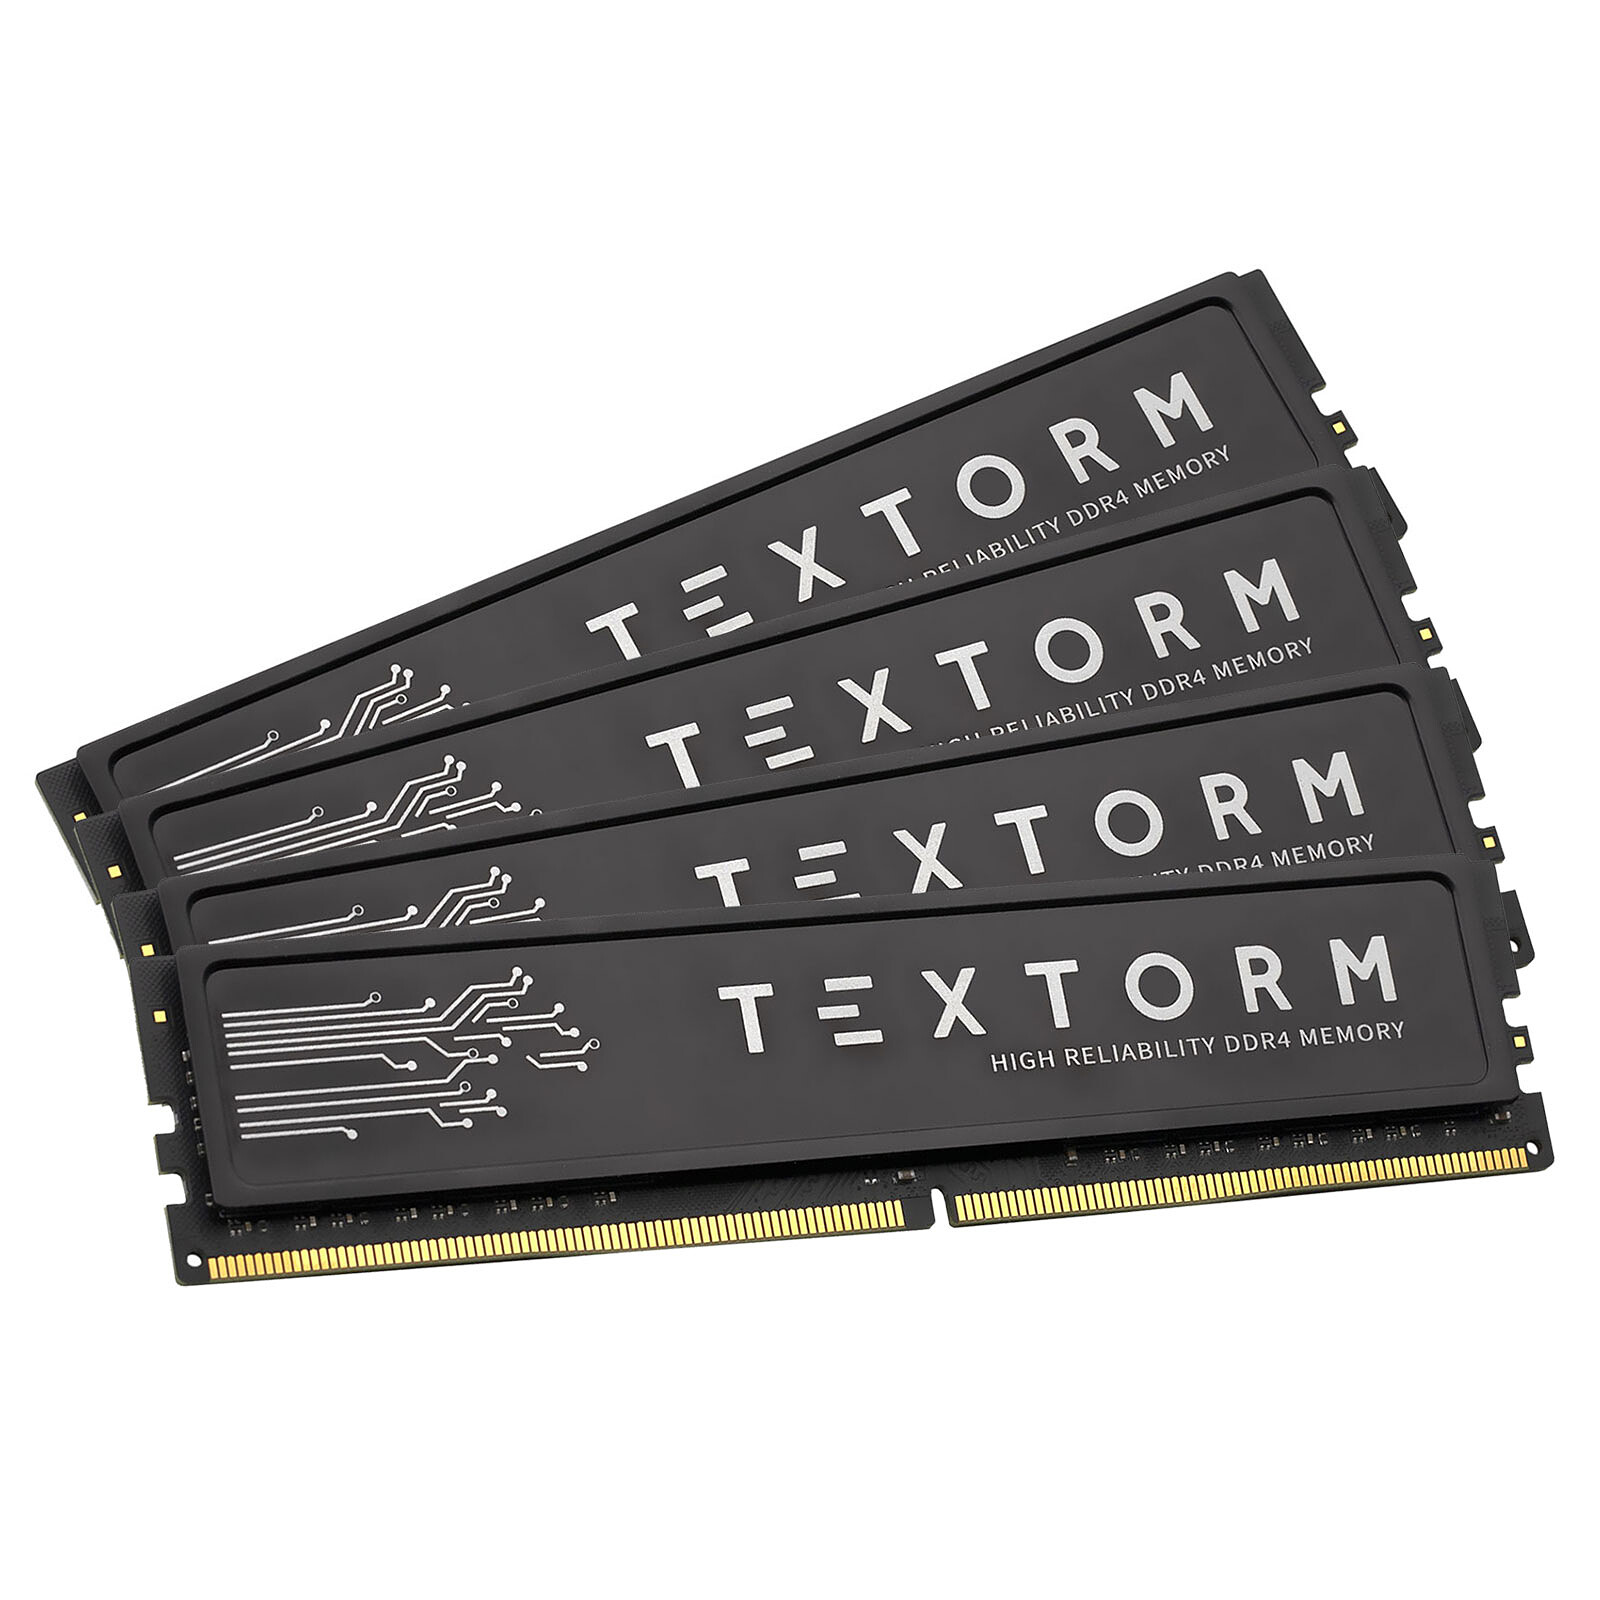 Textorm - 4 x 16 Go (64 Go) - DDR4 2666 MHz - CL19 - Mémoire Textorm sur